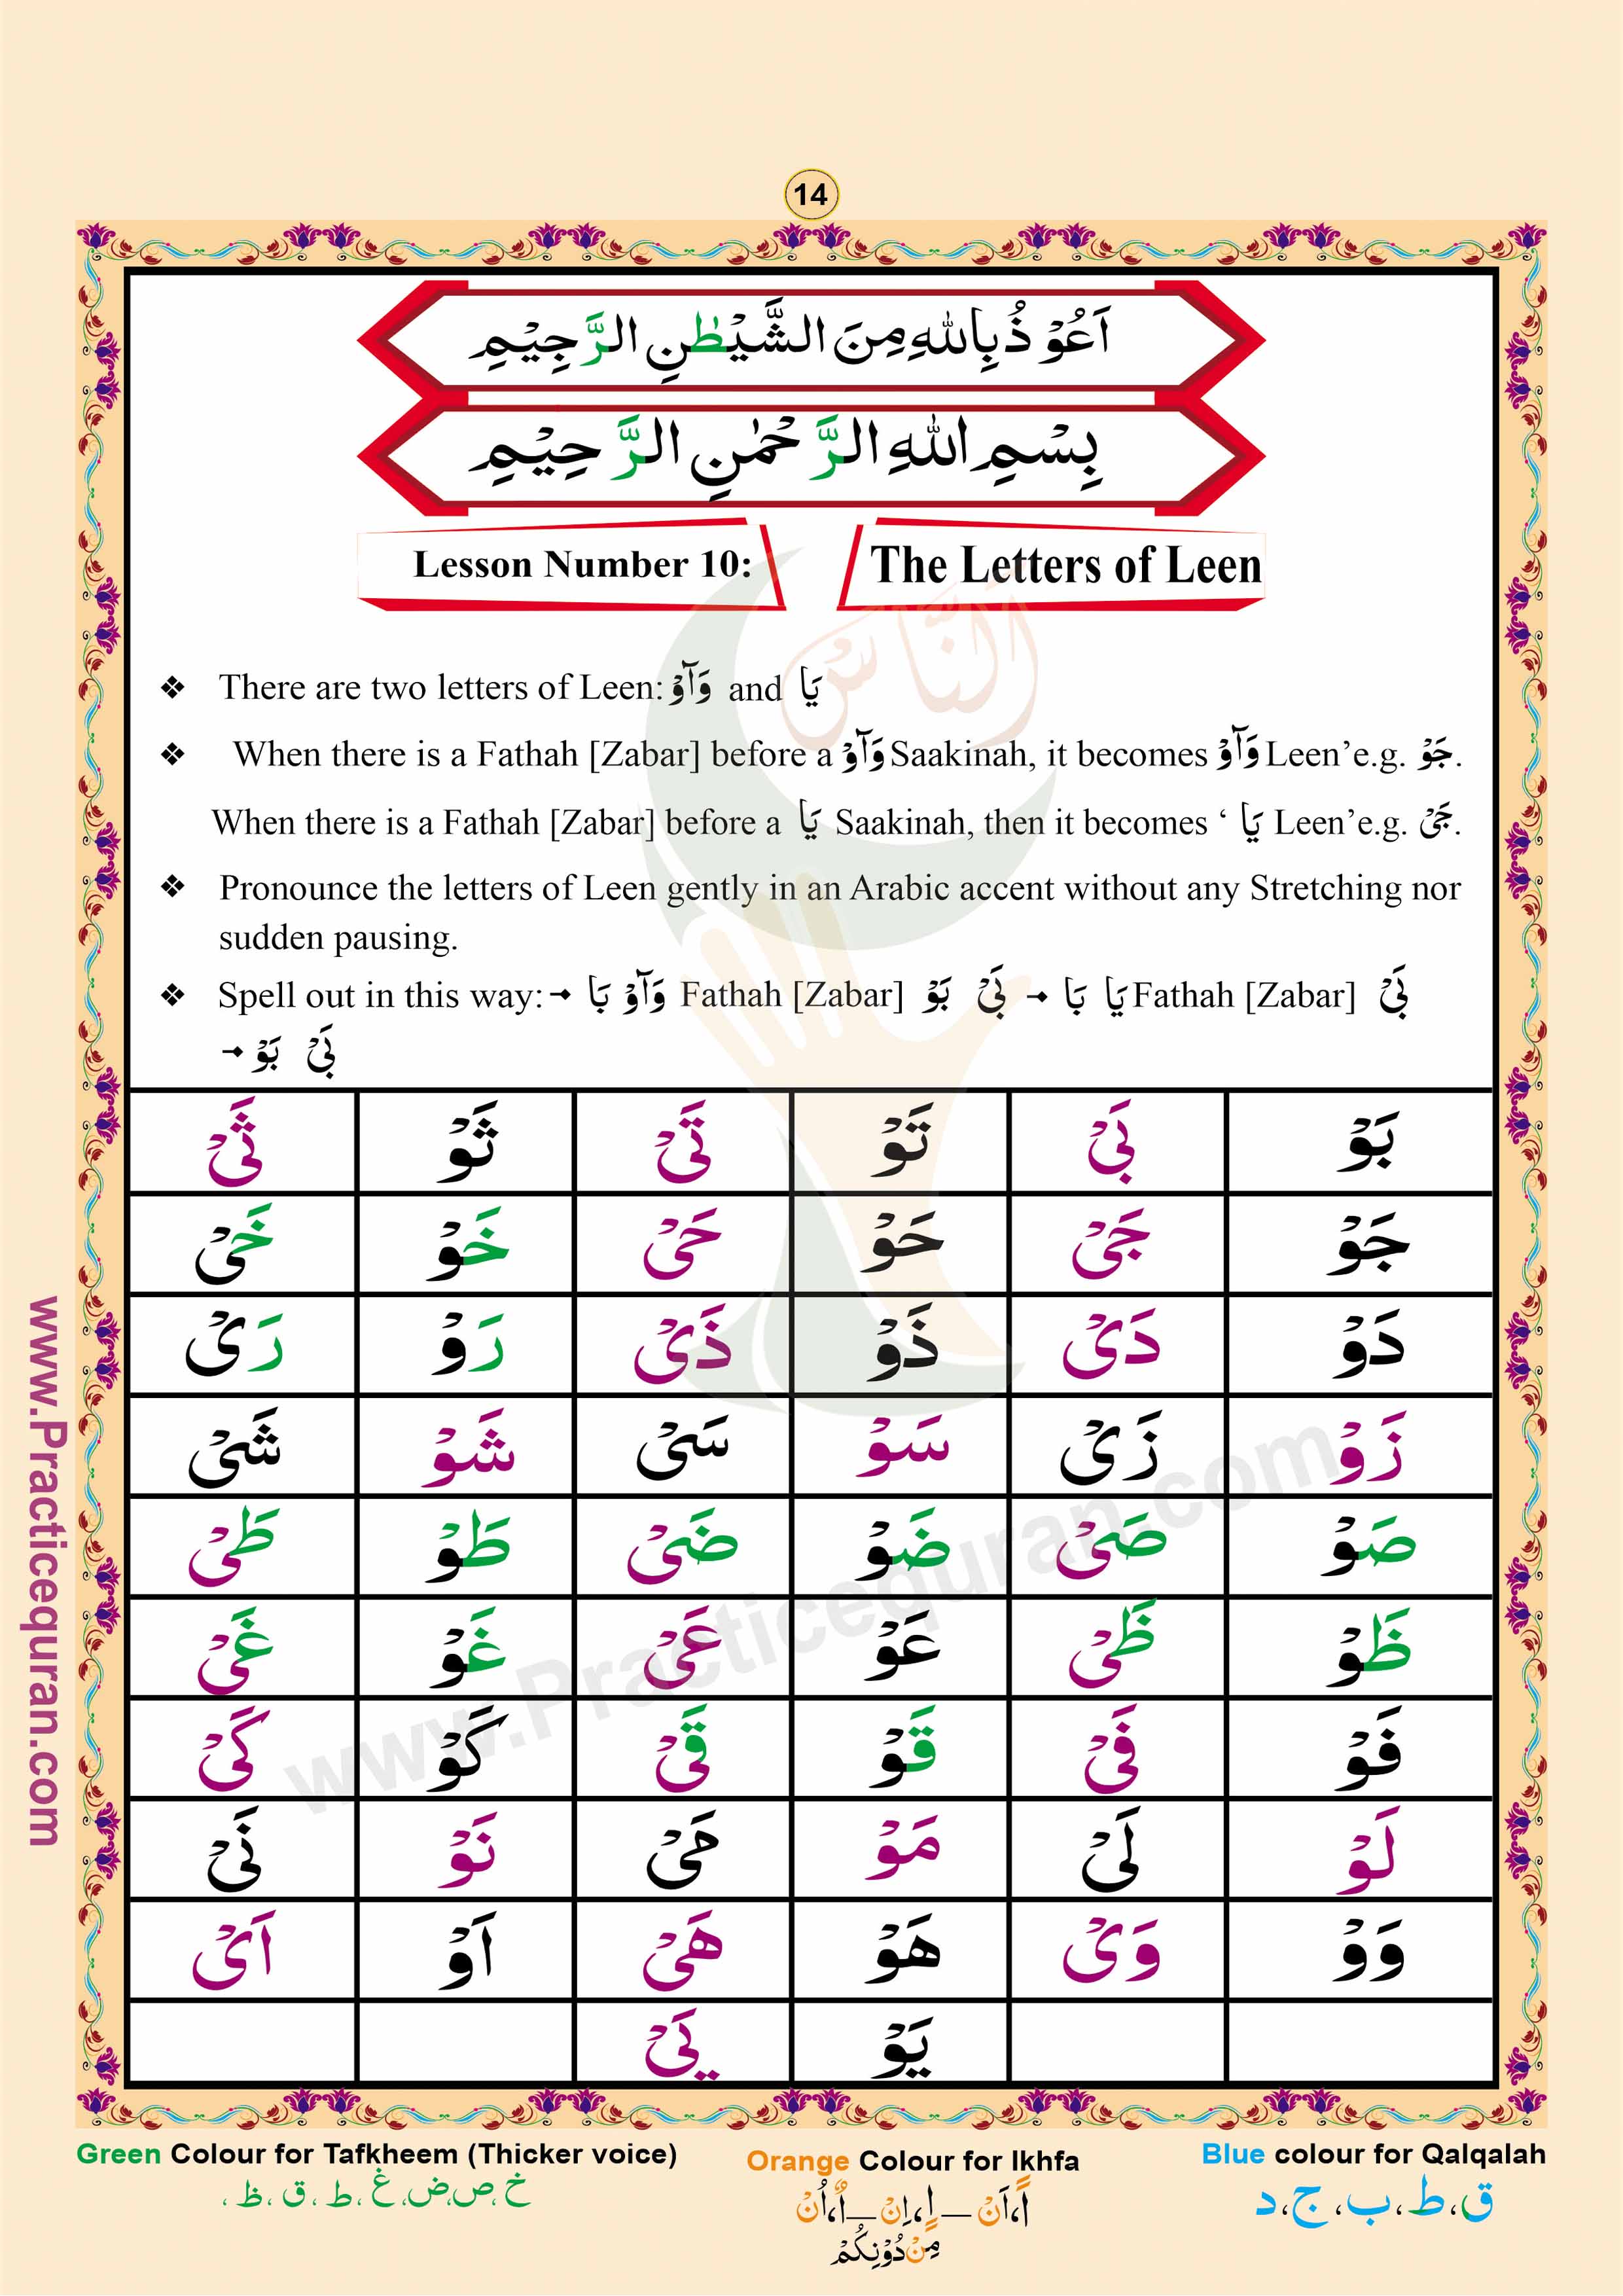 Read English Noorani Qaidah Page No 14, Practice Quran